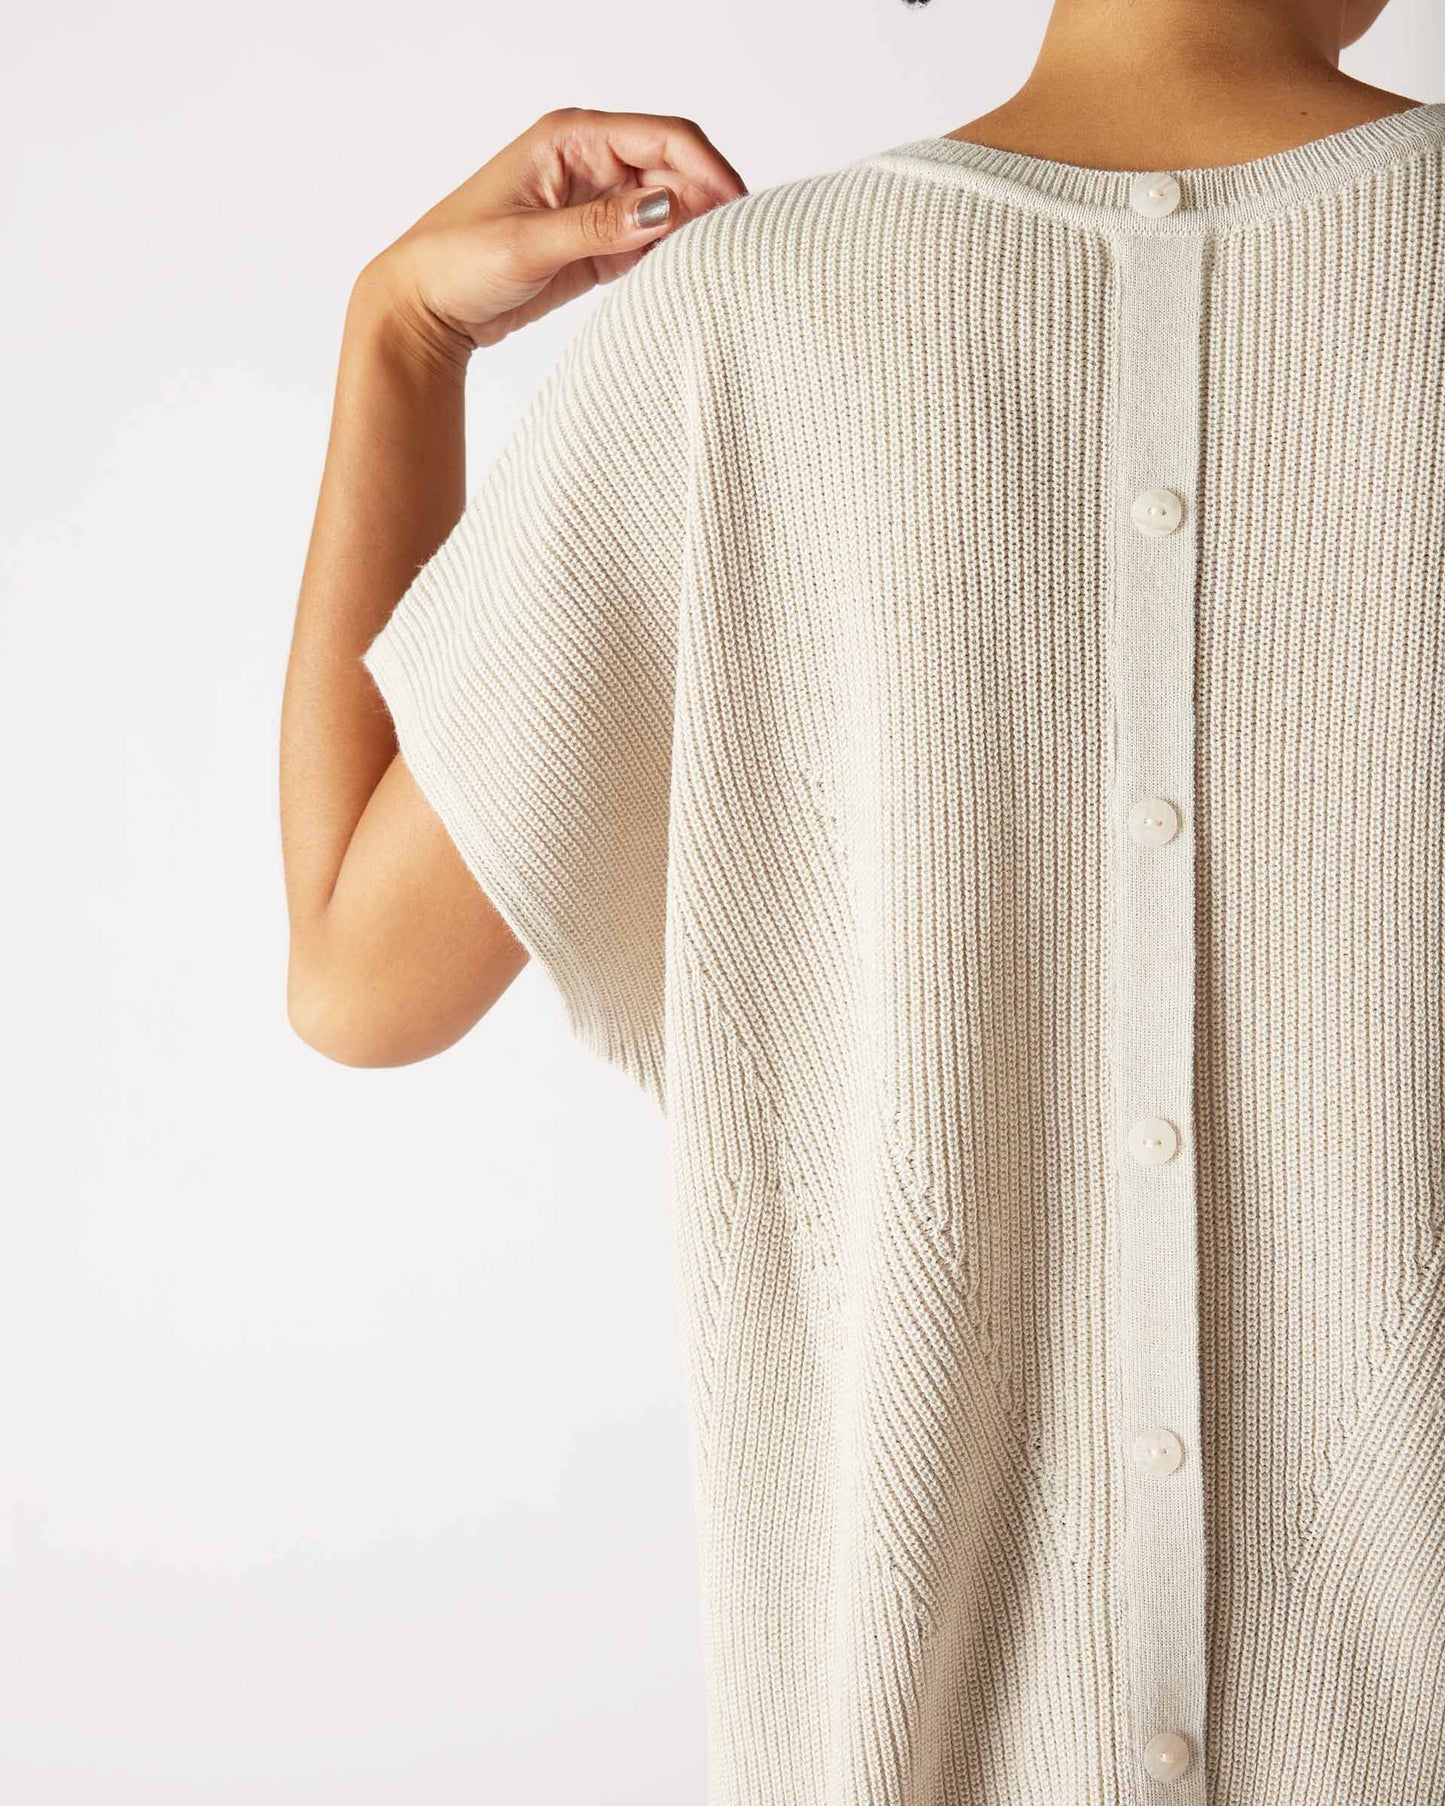 MerSea - Camden Short Sleeve Sweater - Desert Palm